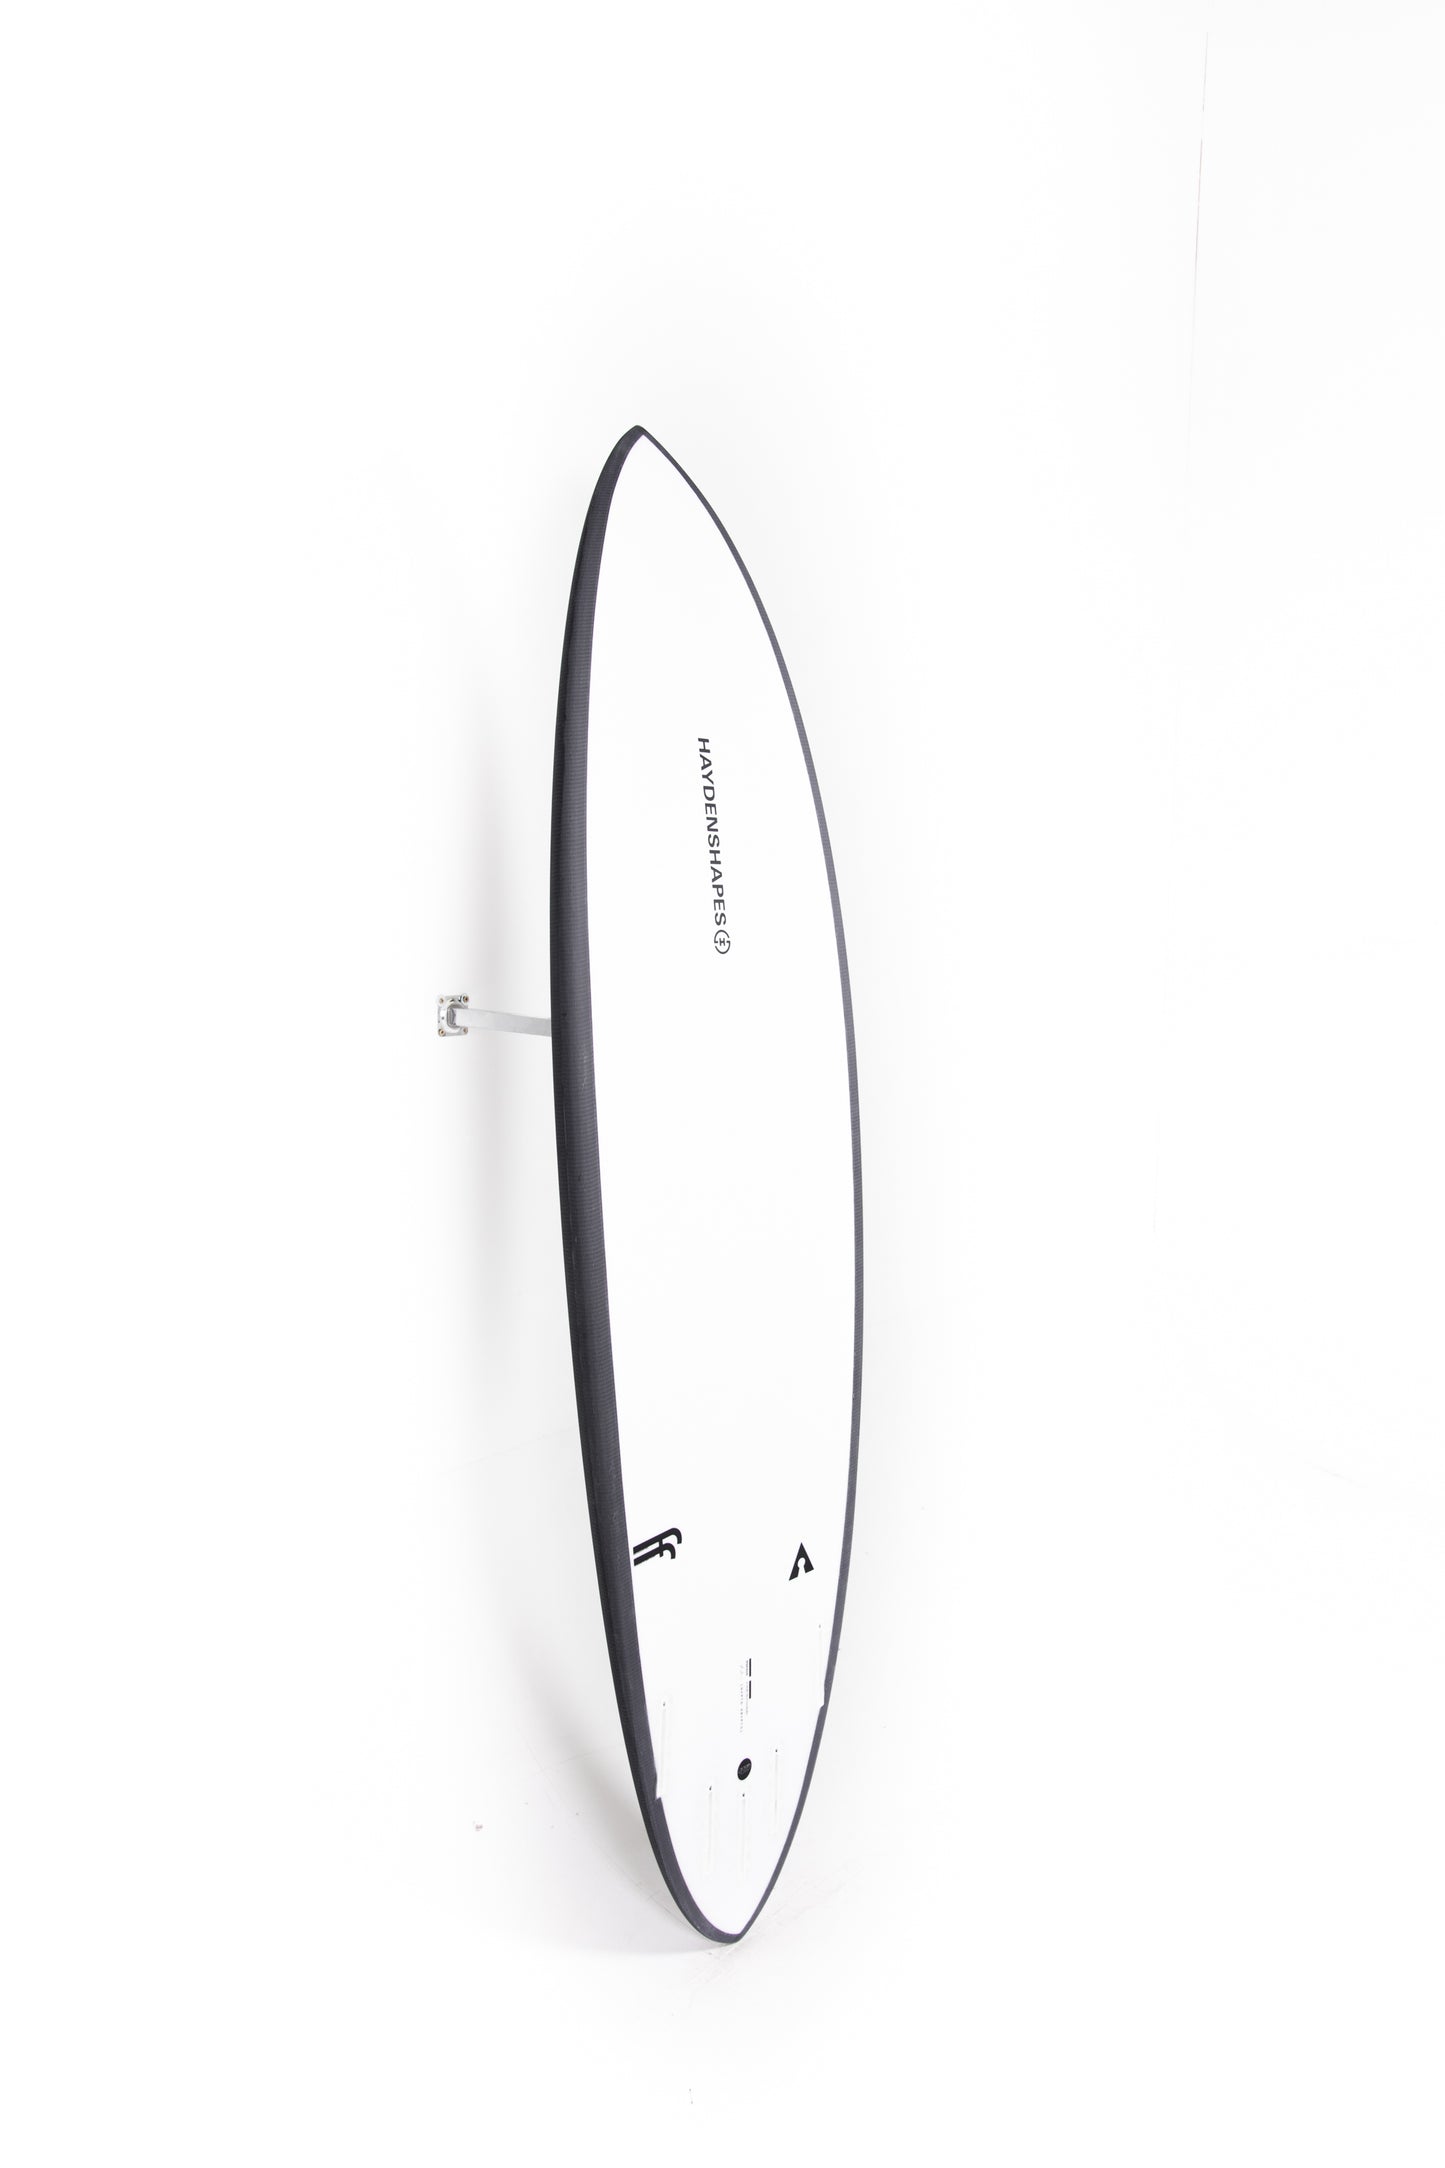 
                  
                    HAYDEN SHAPES SURFBOARDS - HYPTO KRYPTO FF - 6'1" x 20 5/8 x 2 3/4 - 37'71L
                  
                